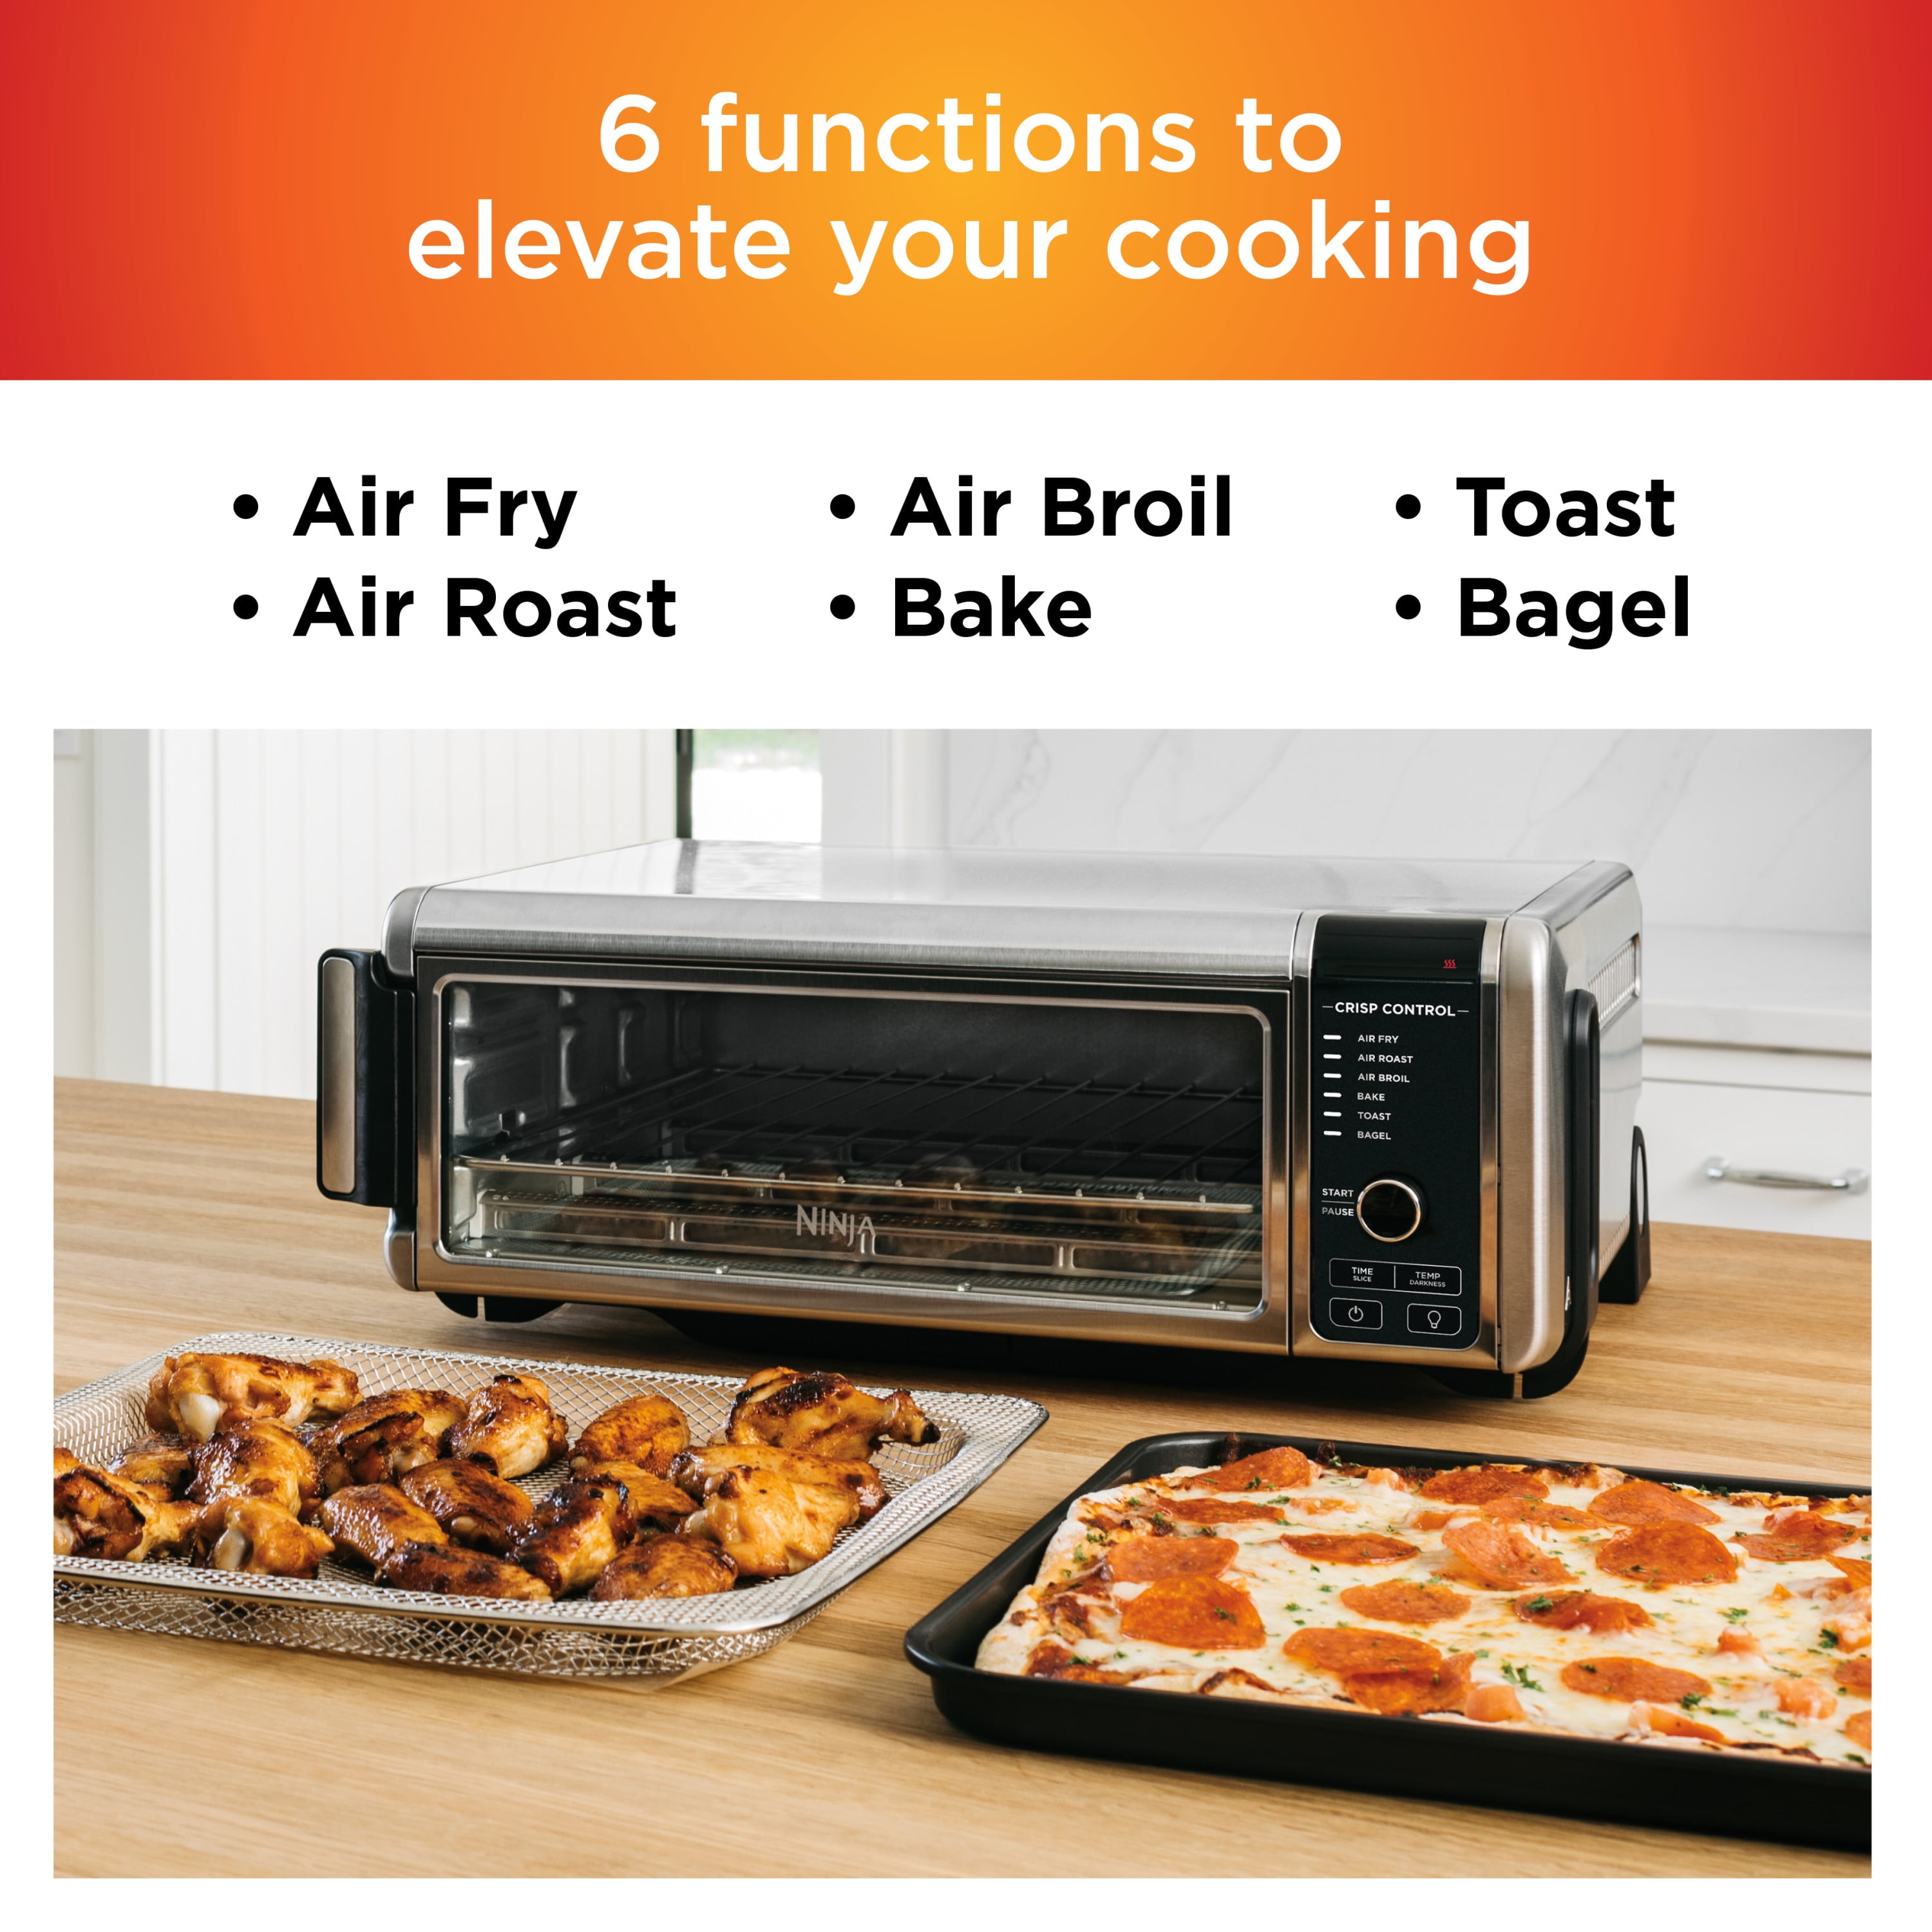 Ninja Foodi Digital Air Fryer Oven - Stainless Steel, 1 ct - King Soopers